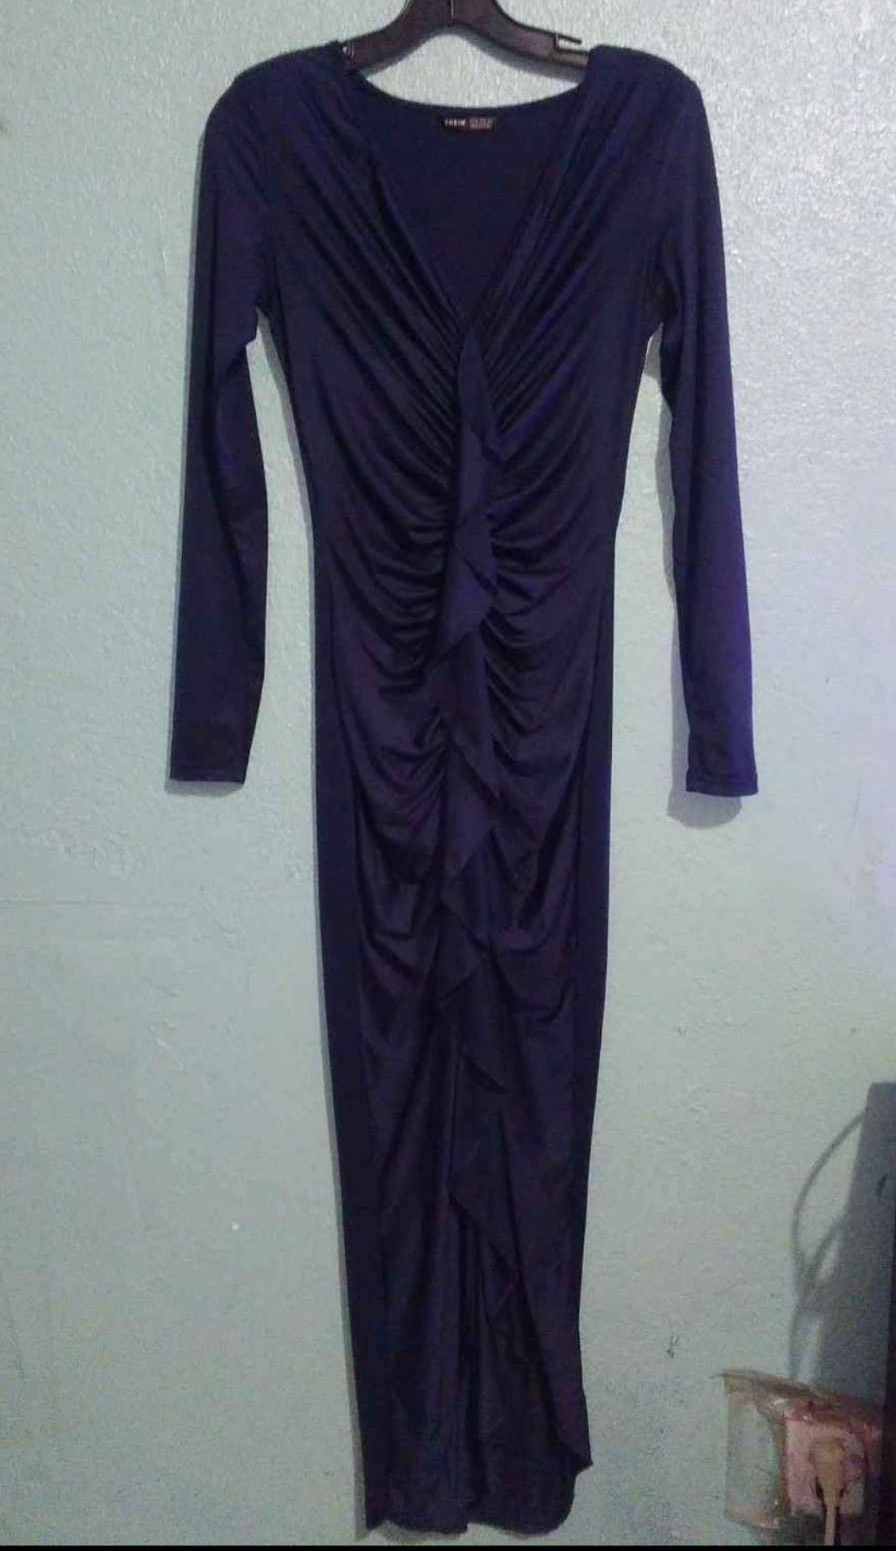 SM ROYAL BLUE DRESS $40